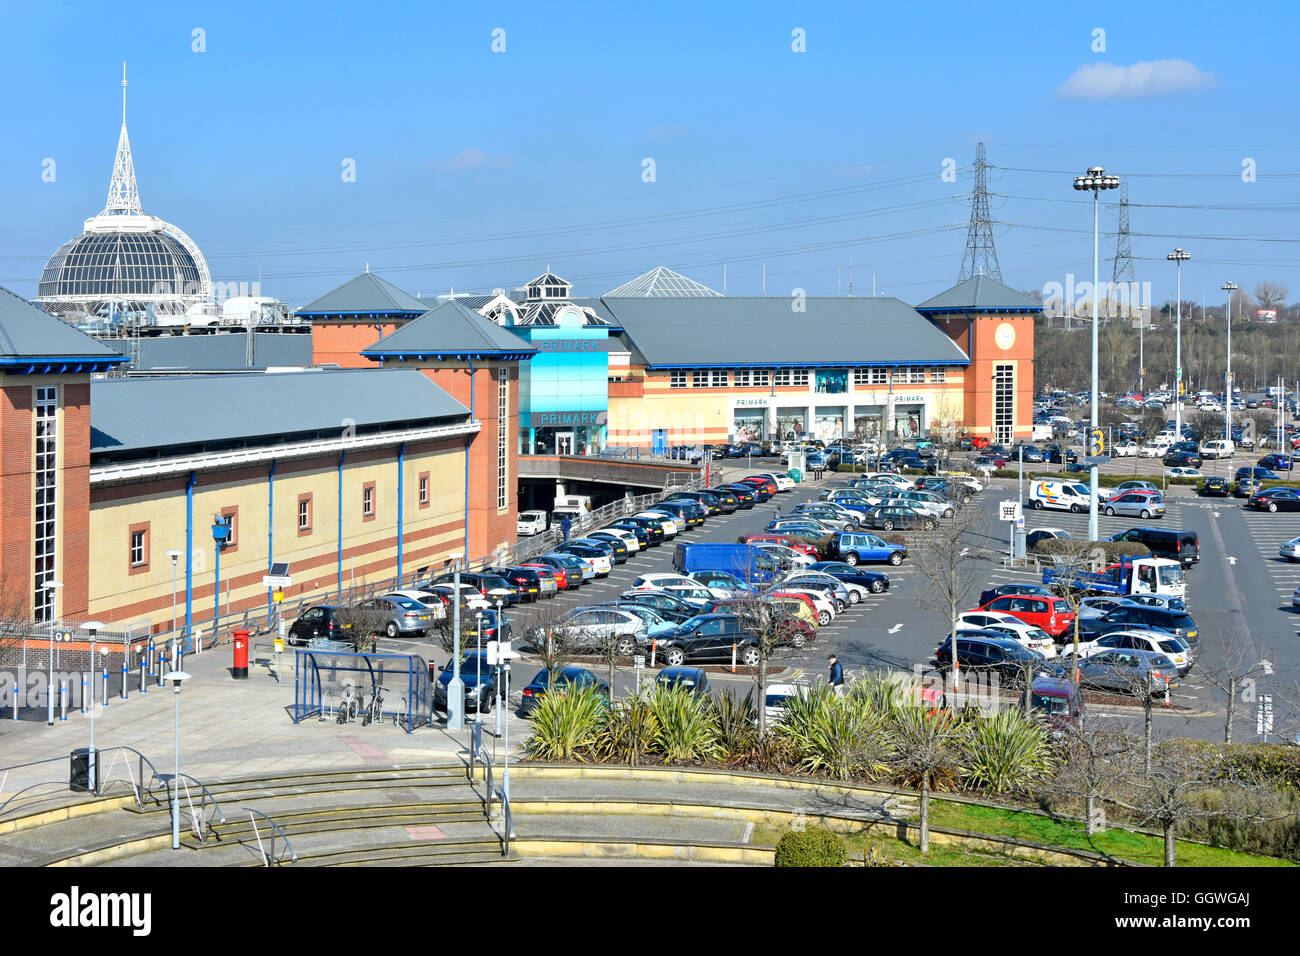 Vista aerea degli esterni edifici moderni che fanno parte del complesso commerciale al coperto Lakeside, grandi aree di parcheggio gratuito a West Thurrock Essex Inghilterra UK Foto Stock